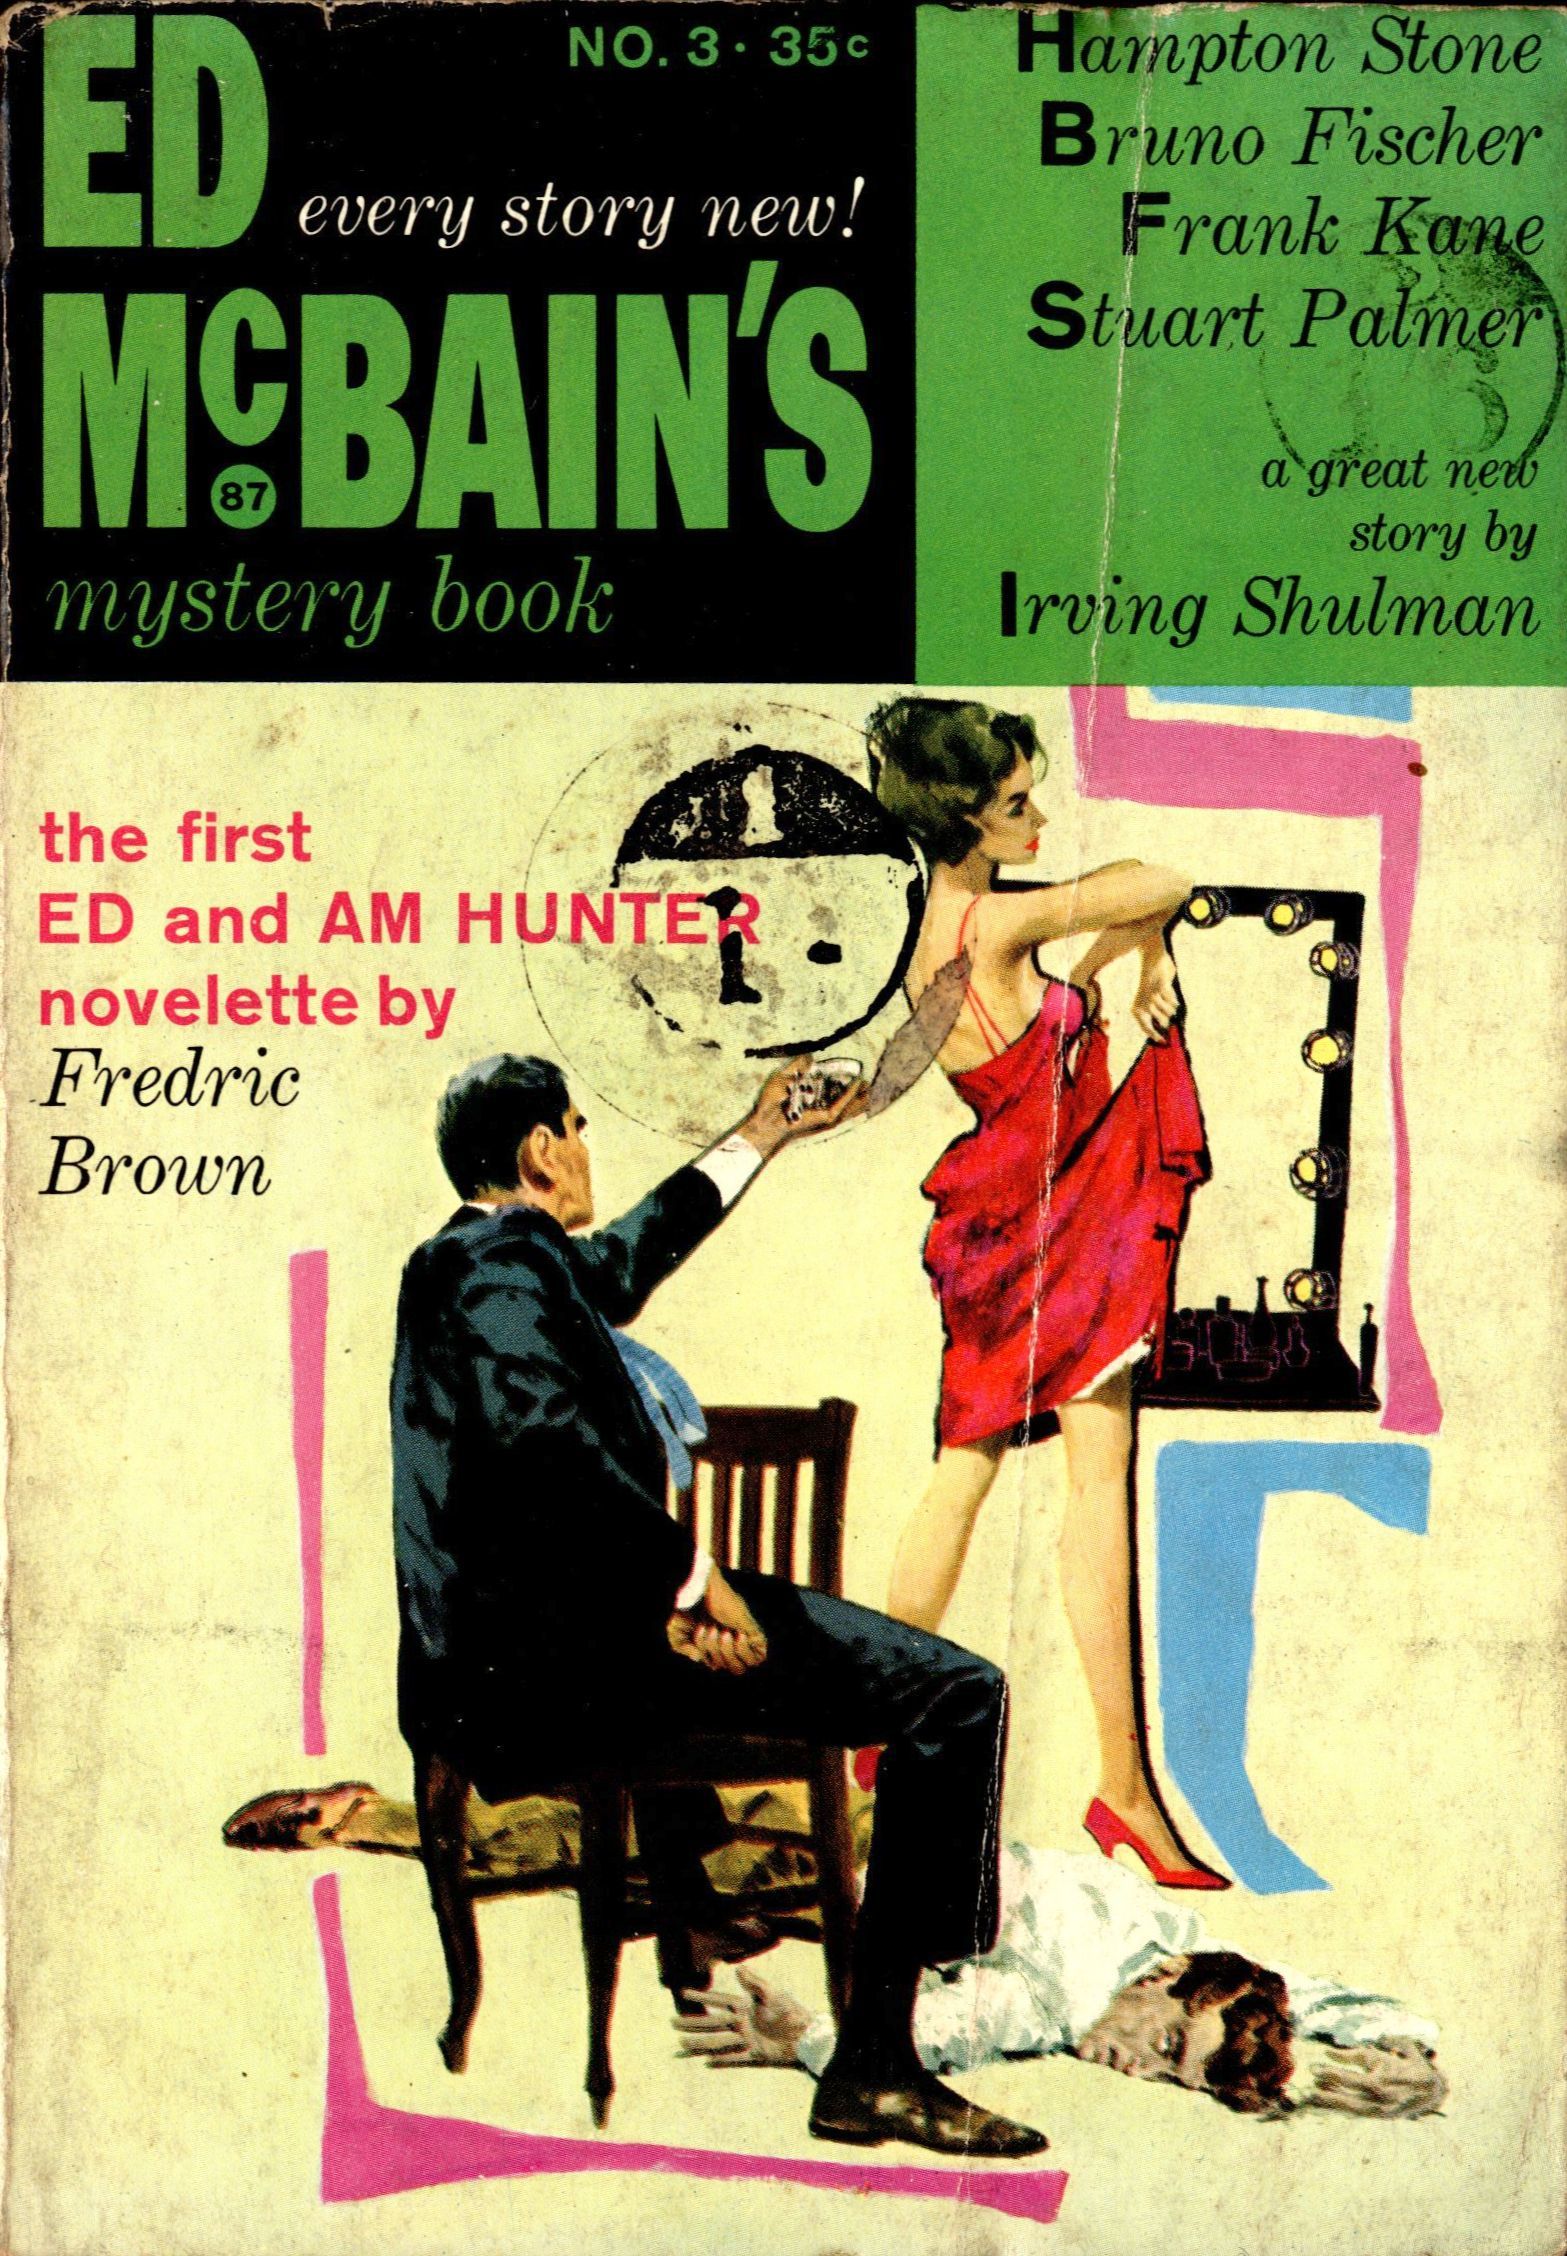 Ed McBain's Mystery Book No. 3